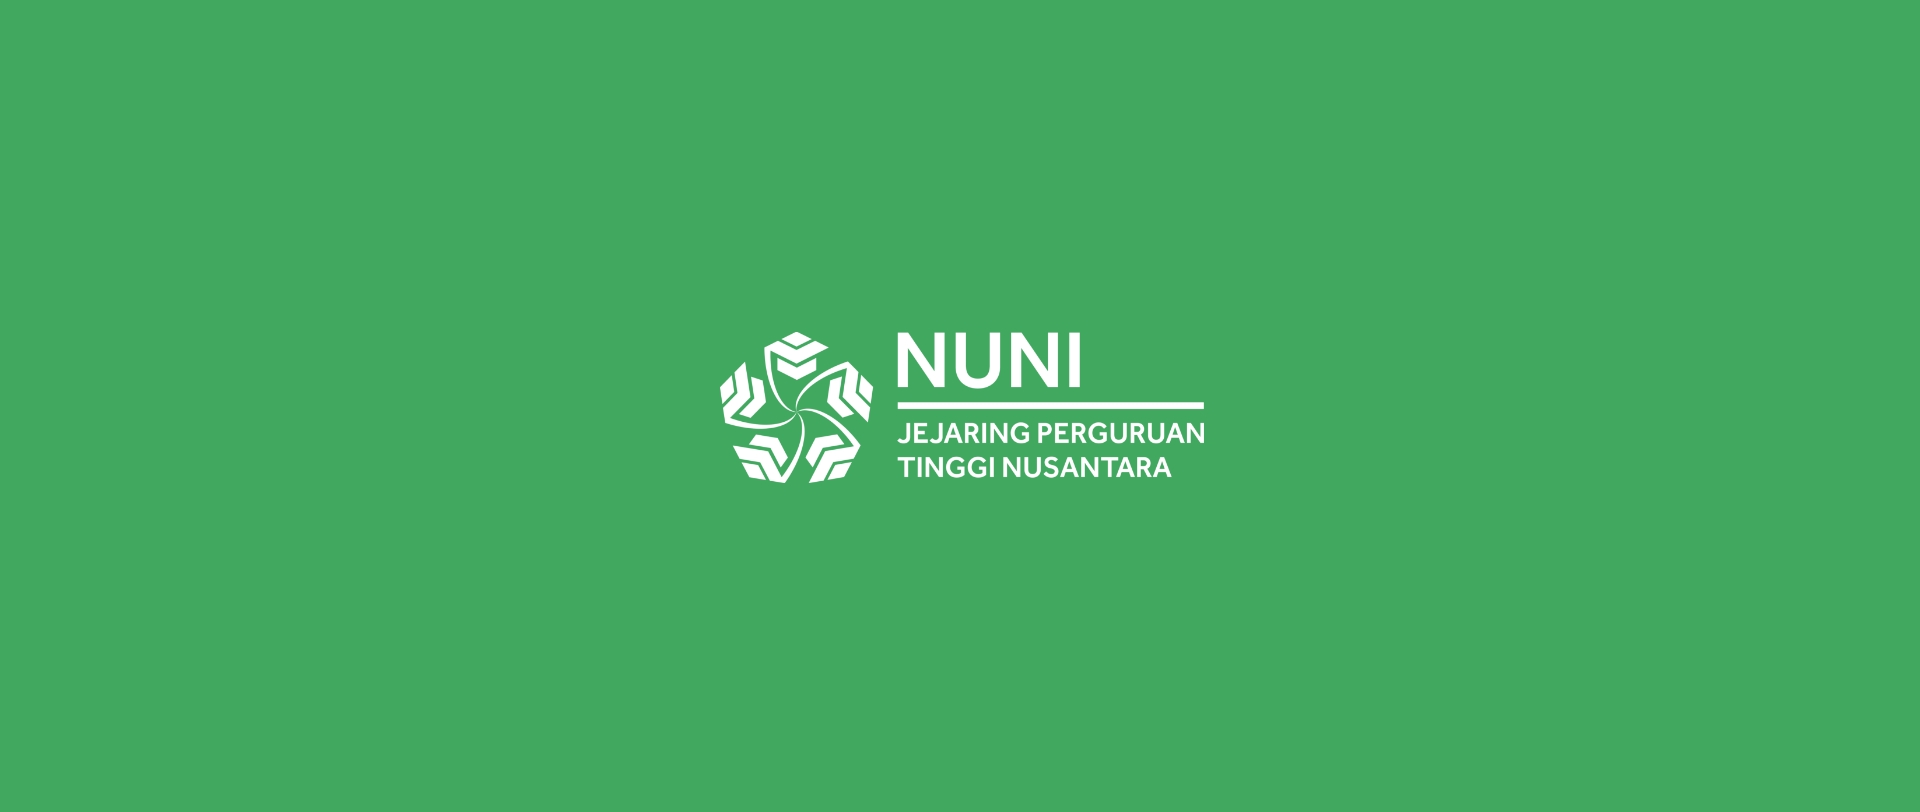 Universitas Muhammadiyah Malang memperingati 10 tahun NUNI